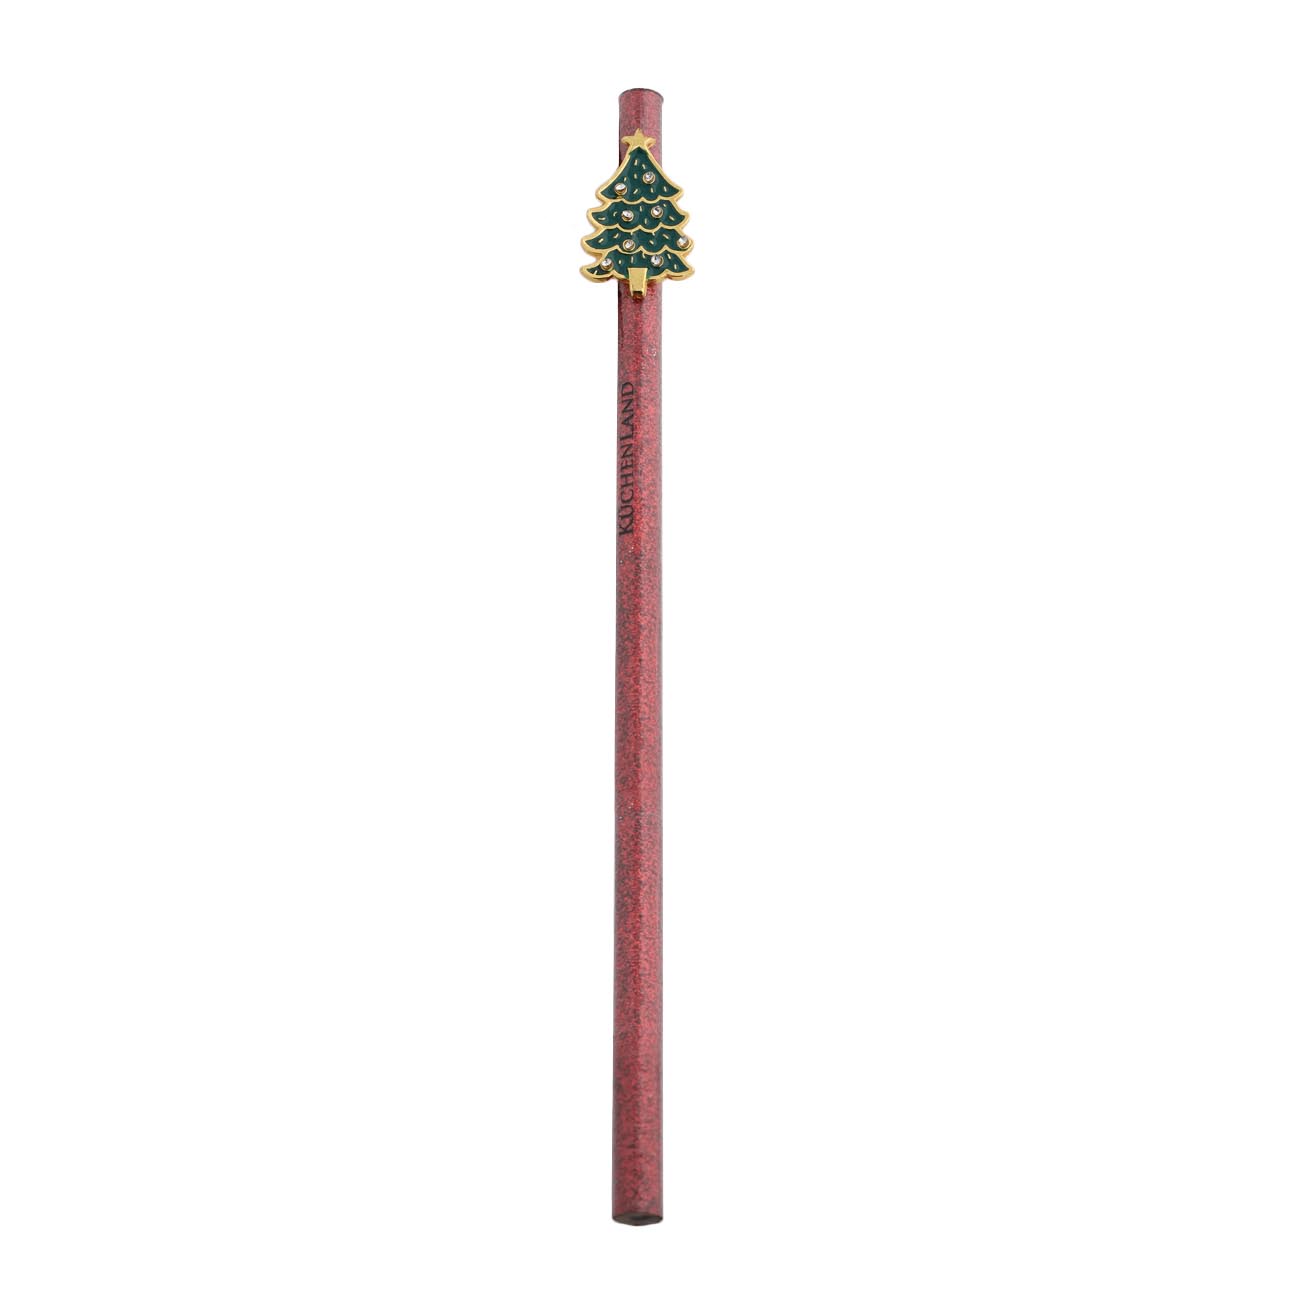 Карандаш, 17 см, чернографитный, с фигуркой, дерево, красный, Елка, Draw